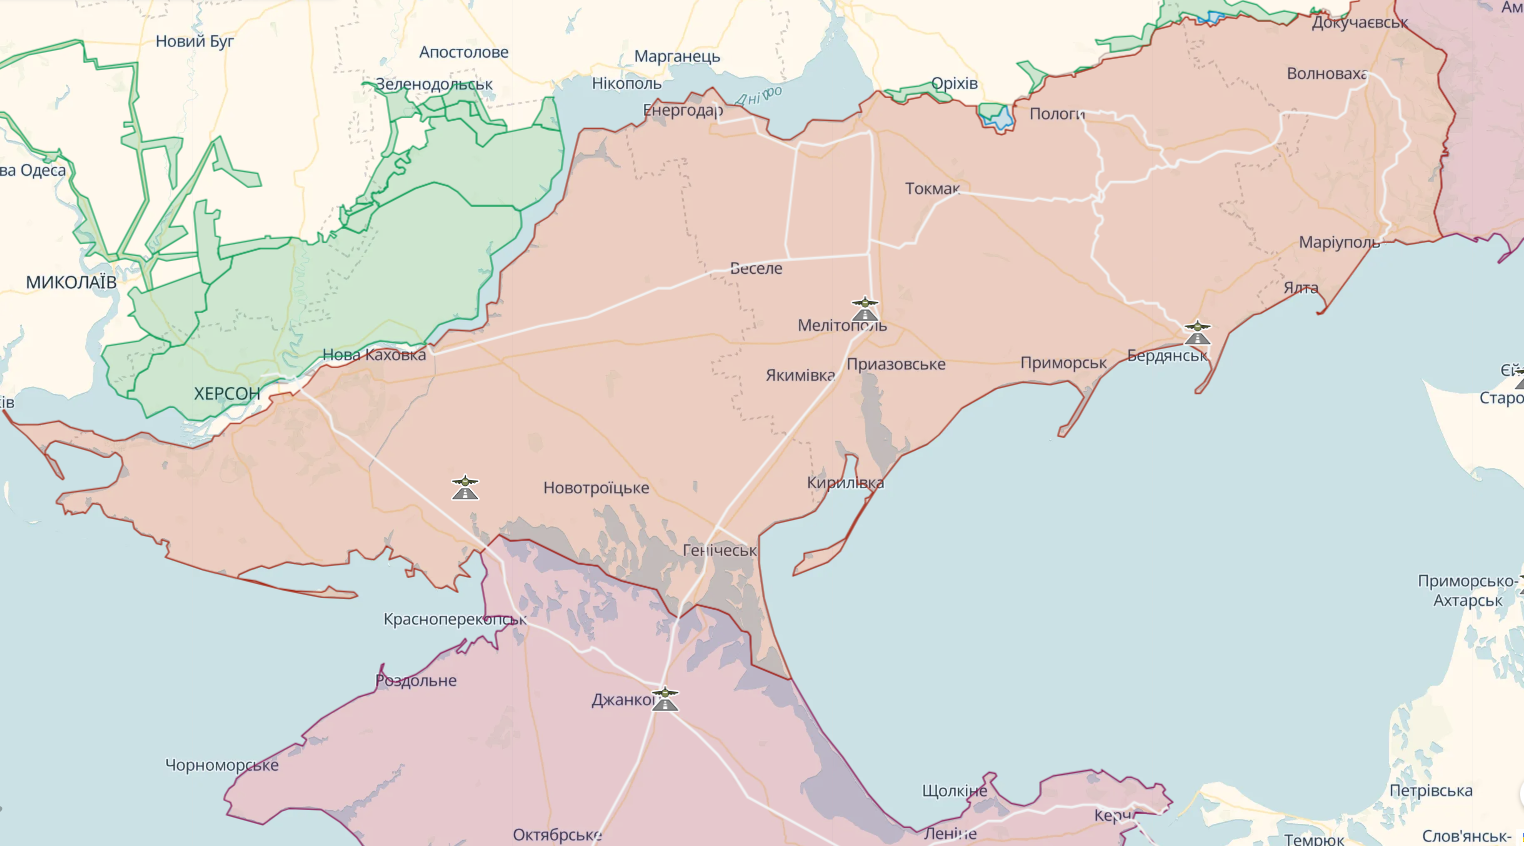 Військовий експерт спрогнозував падіння другої і третьої лінії оборони окупантів: дорогу в Крим буде відкрито